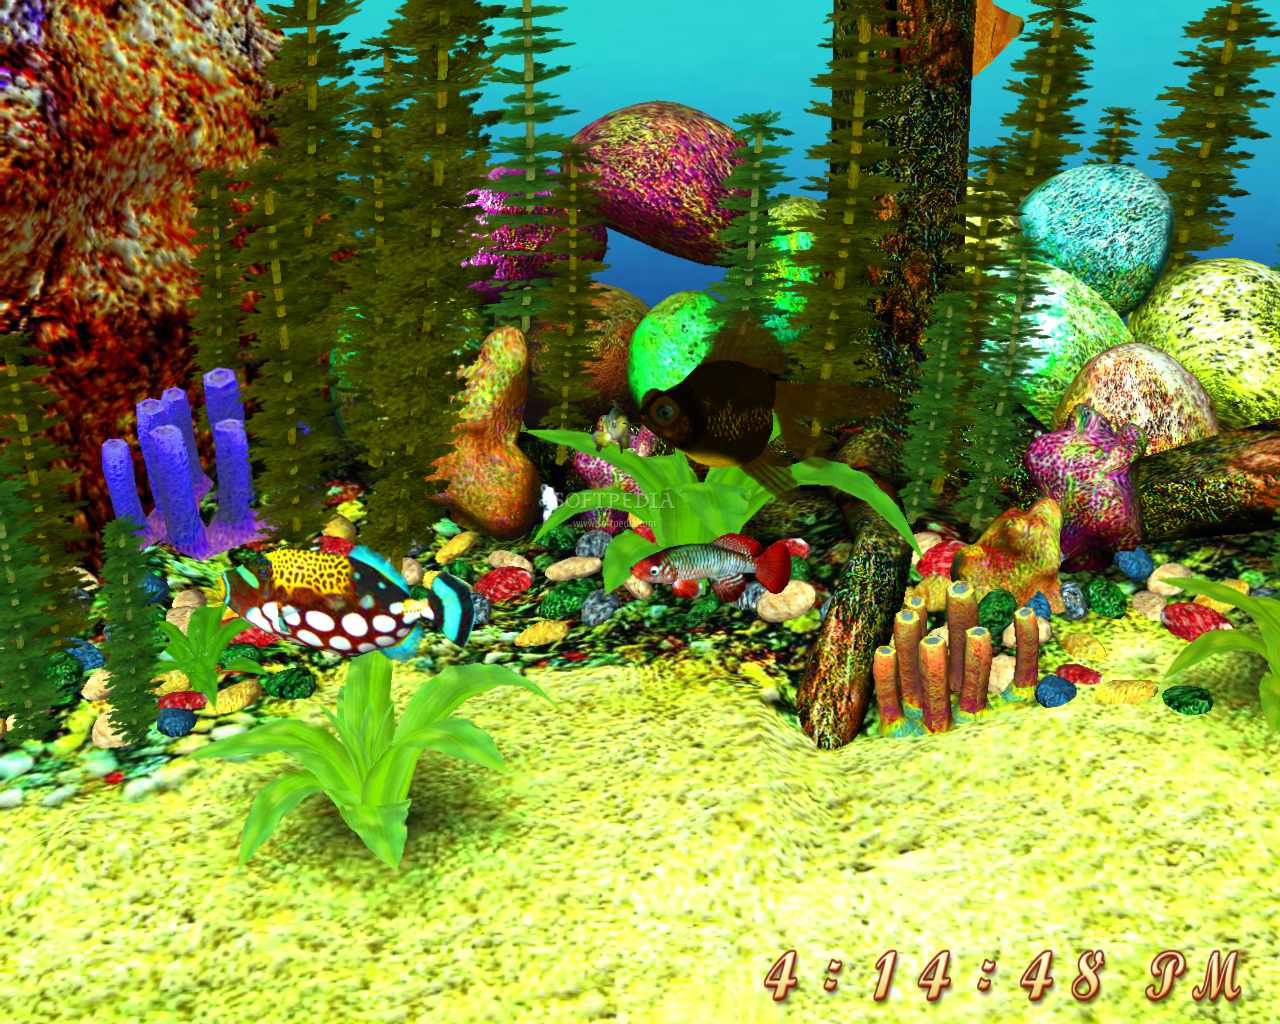 descargar crawler 3d marine aquarium gratis